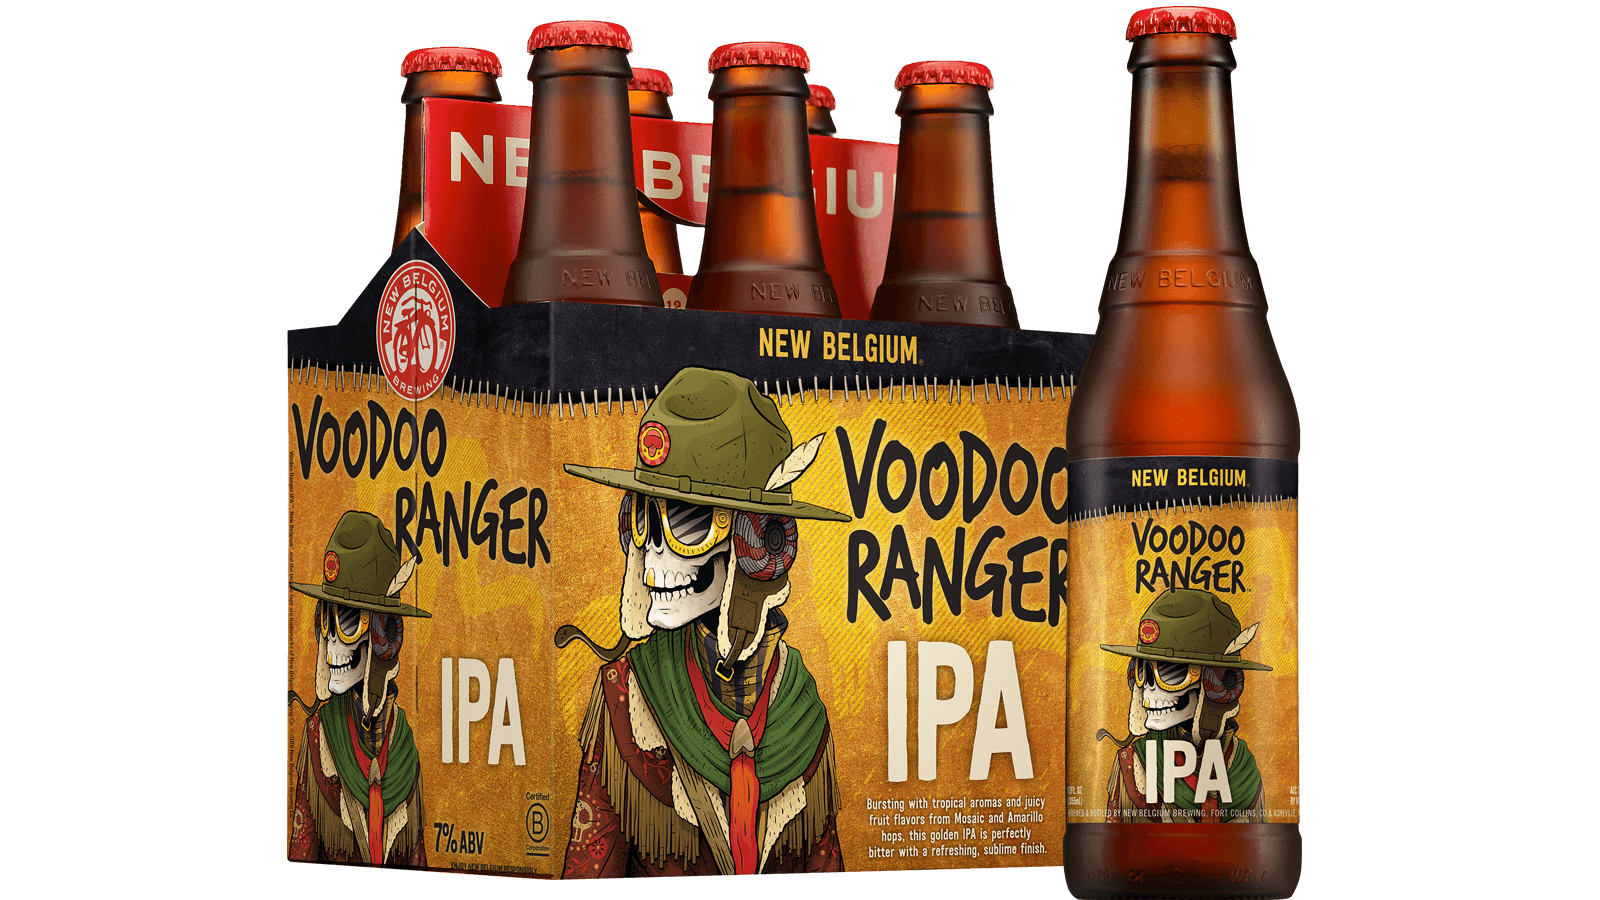 Voodoo Ranger IPA. New Belgium Brewing